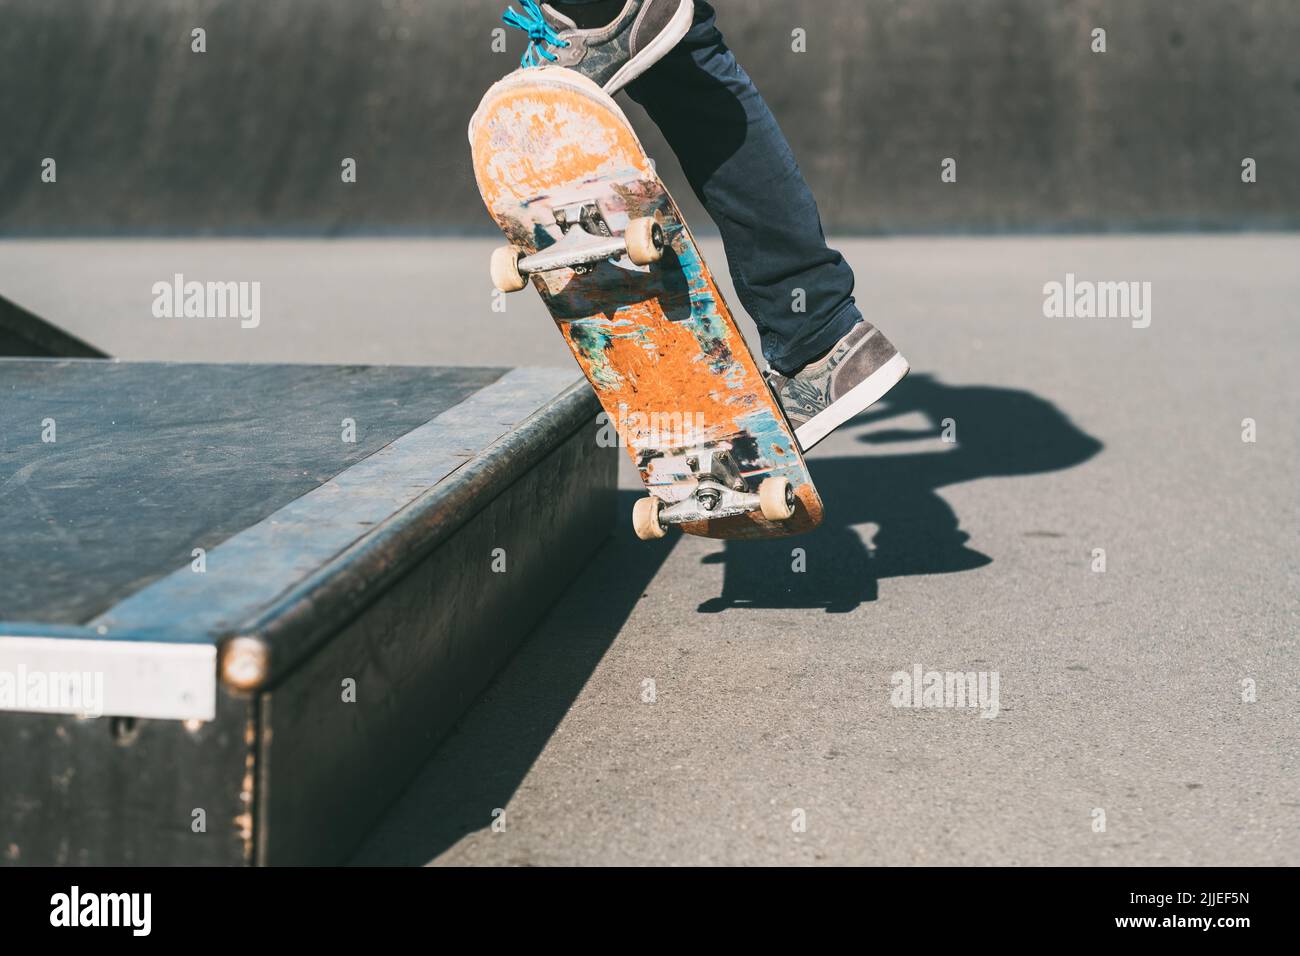 skateboarding man feet sport trick skate park Stock Photo